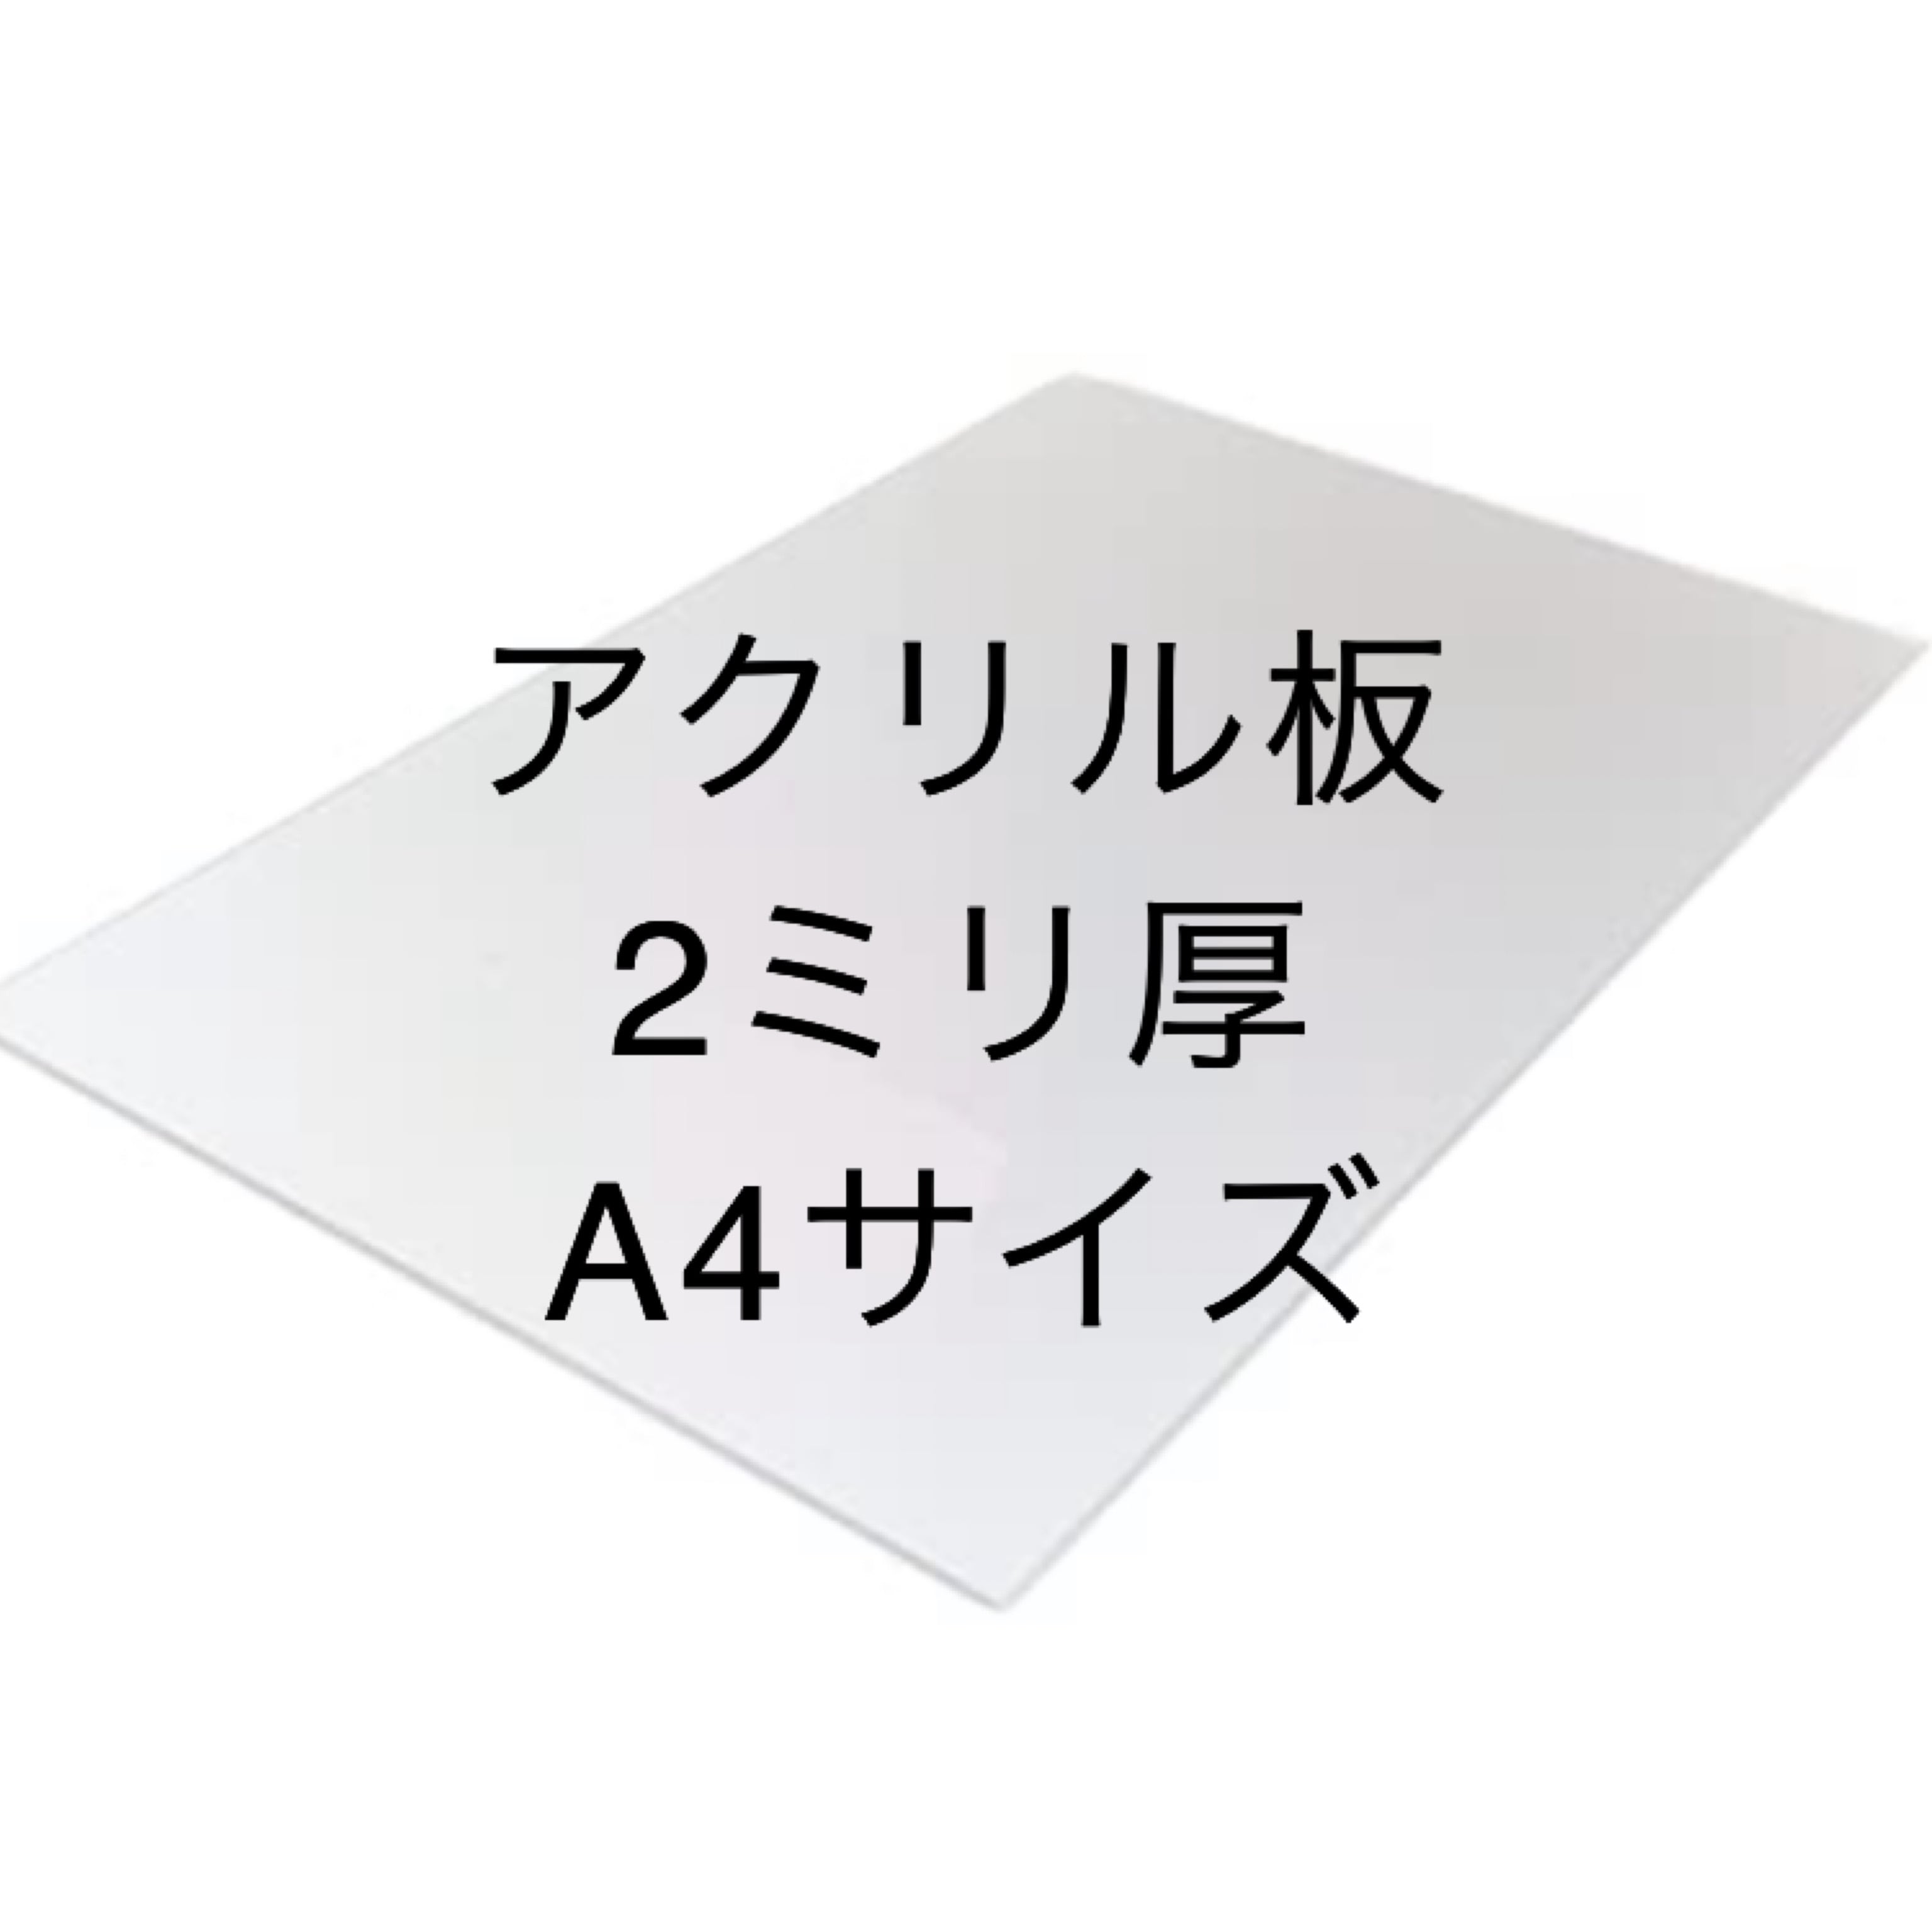 日本製 アクリル板 白(キャスト板) 厚み20mm 620X700mm 縮小カット1枚無料 カンナ糸面取り仕上エッジで手を切る事はありません(業務用) - 3